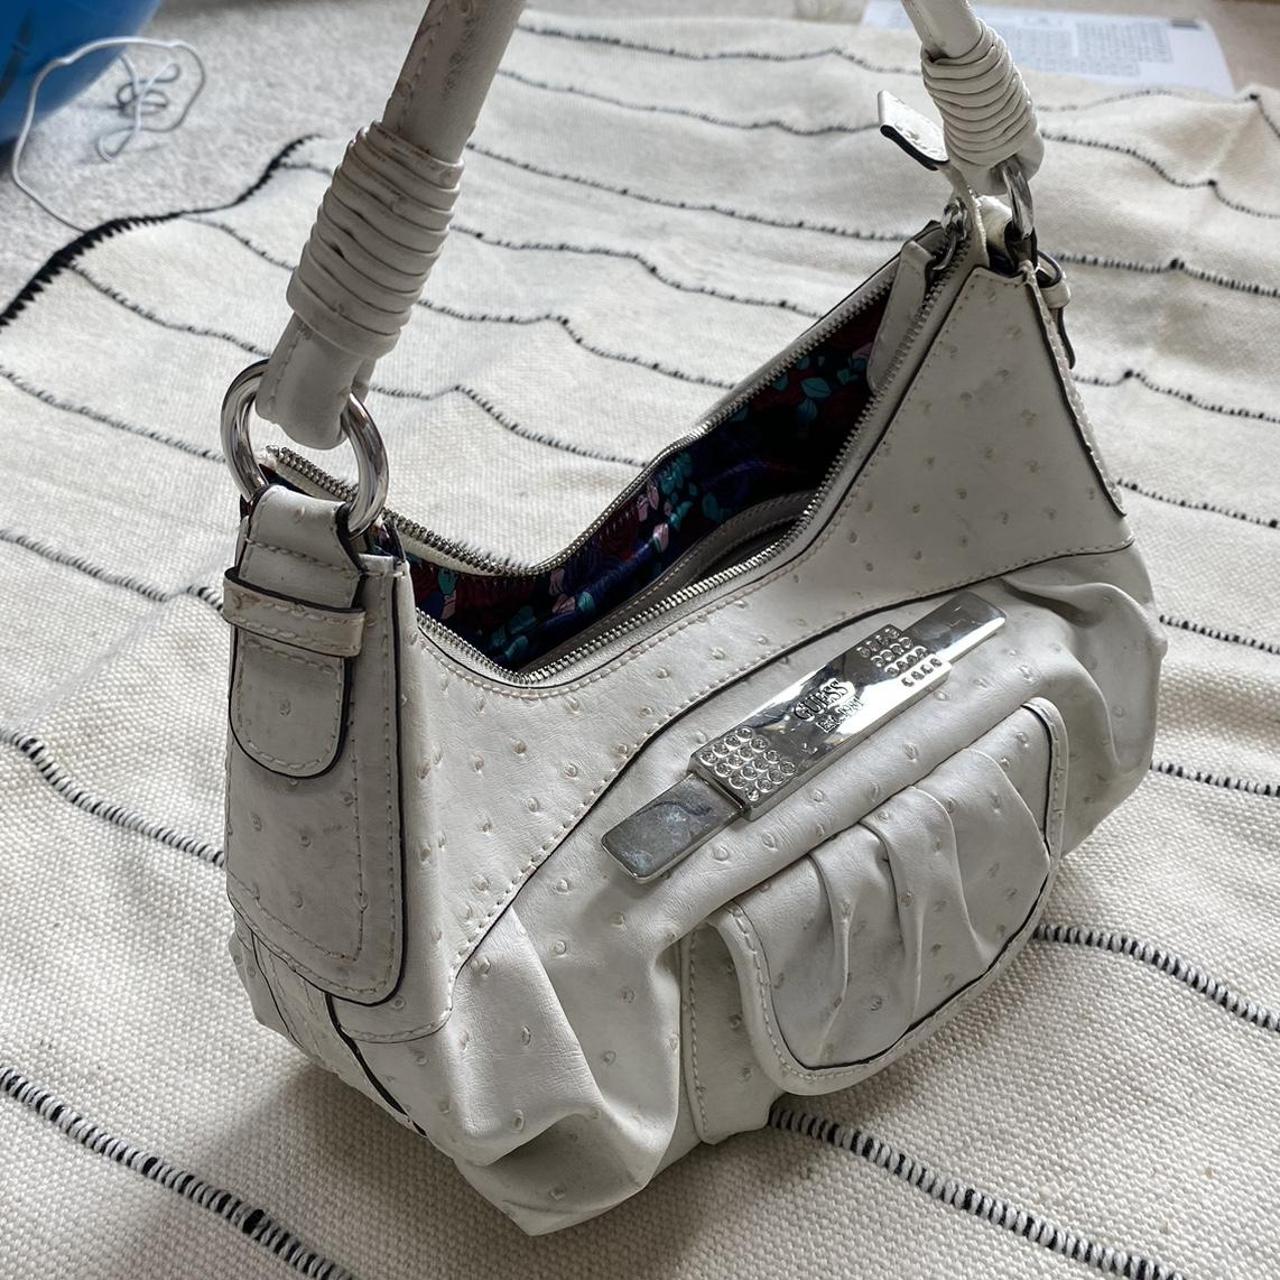 GUESS Handbags | Mercari